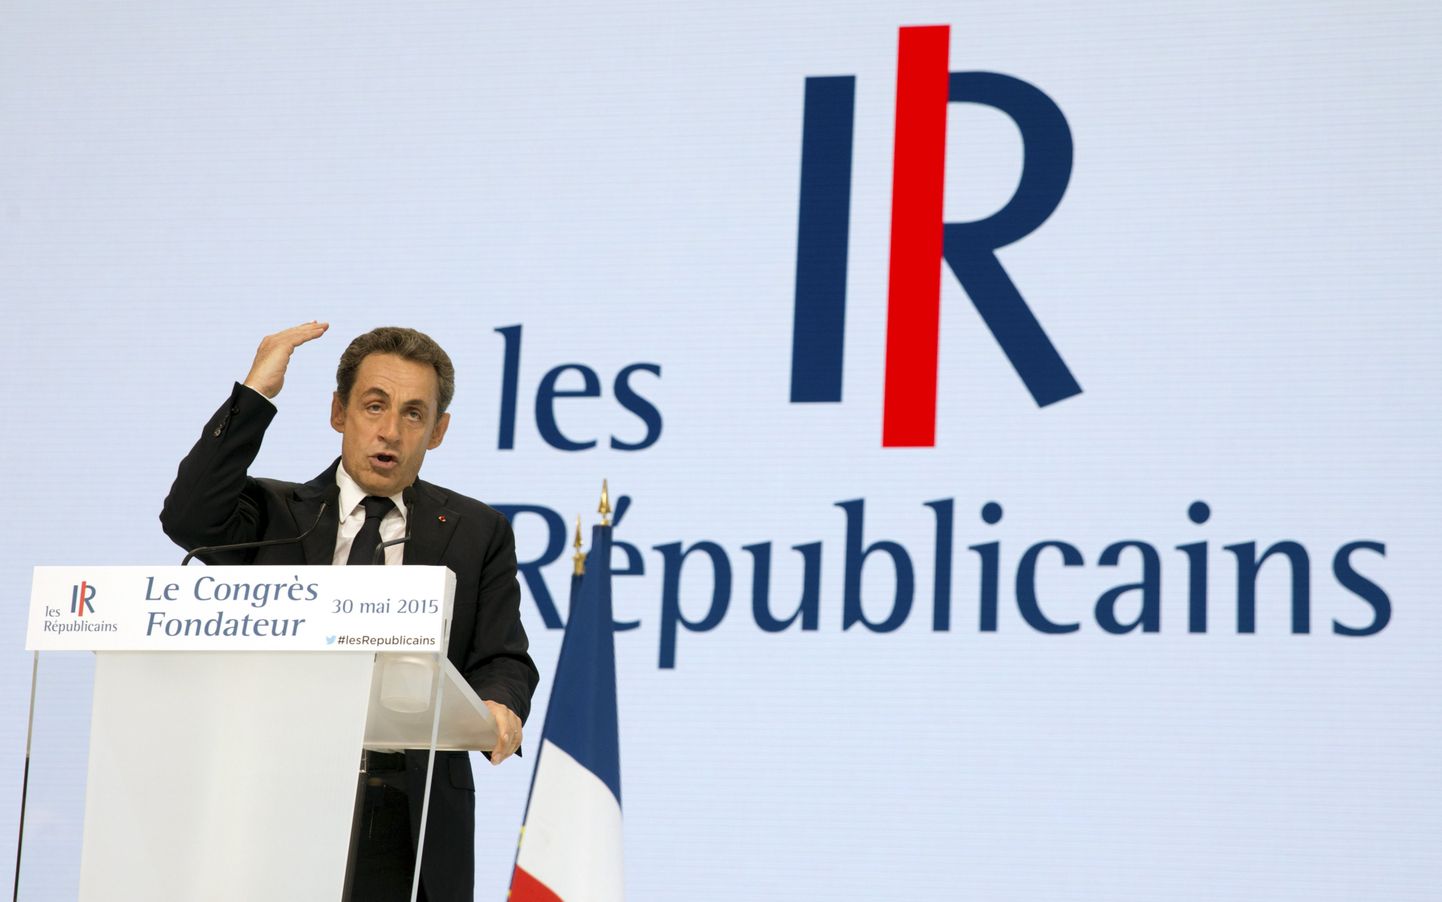 Nicolas Sarkozy täna Pariisis nüüdse nimega Vabariiklaste partei liikmetele  kõnet pidamas.